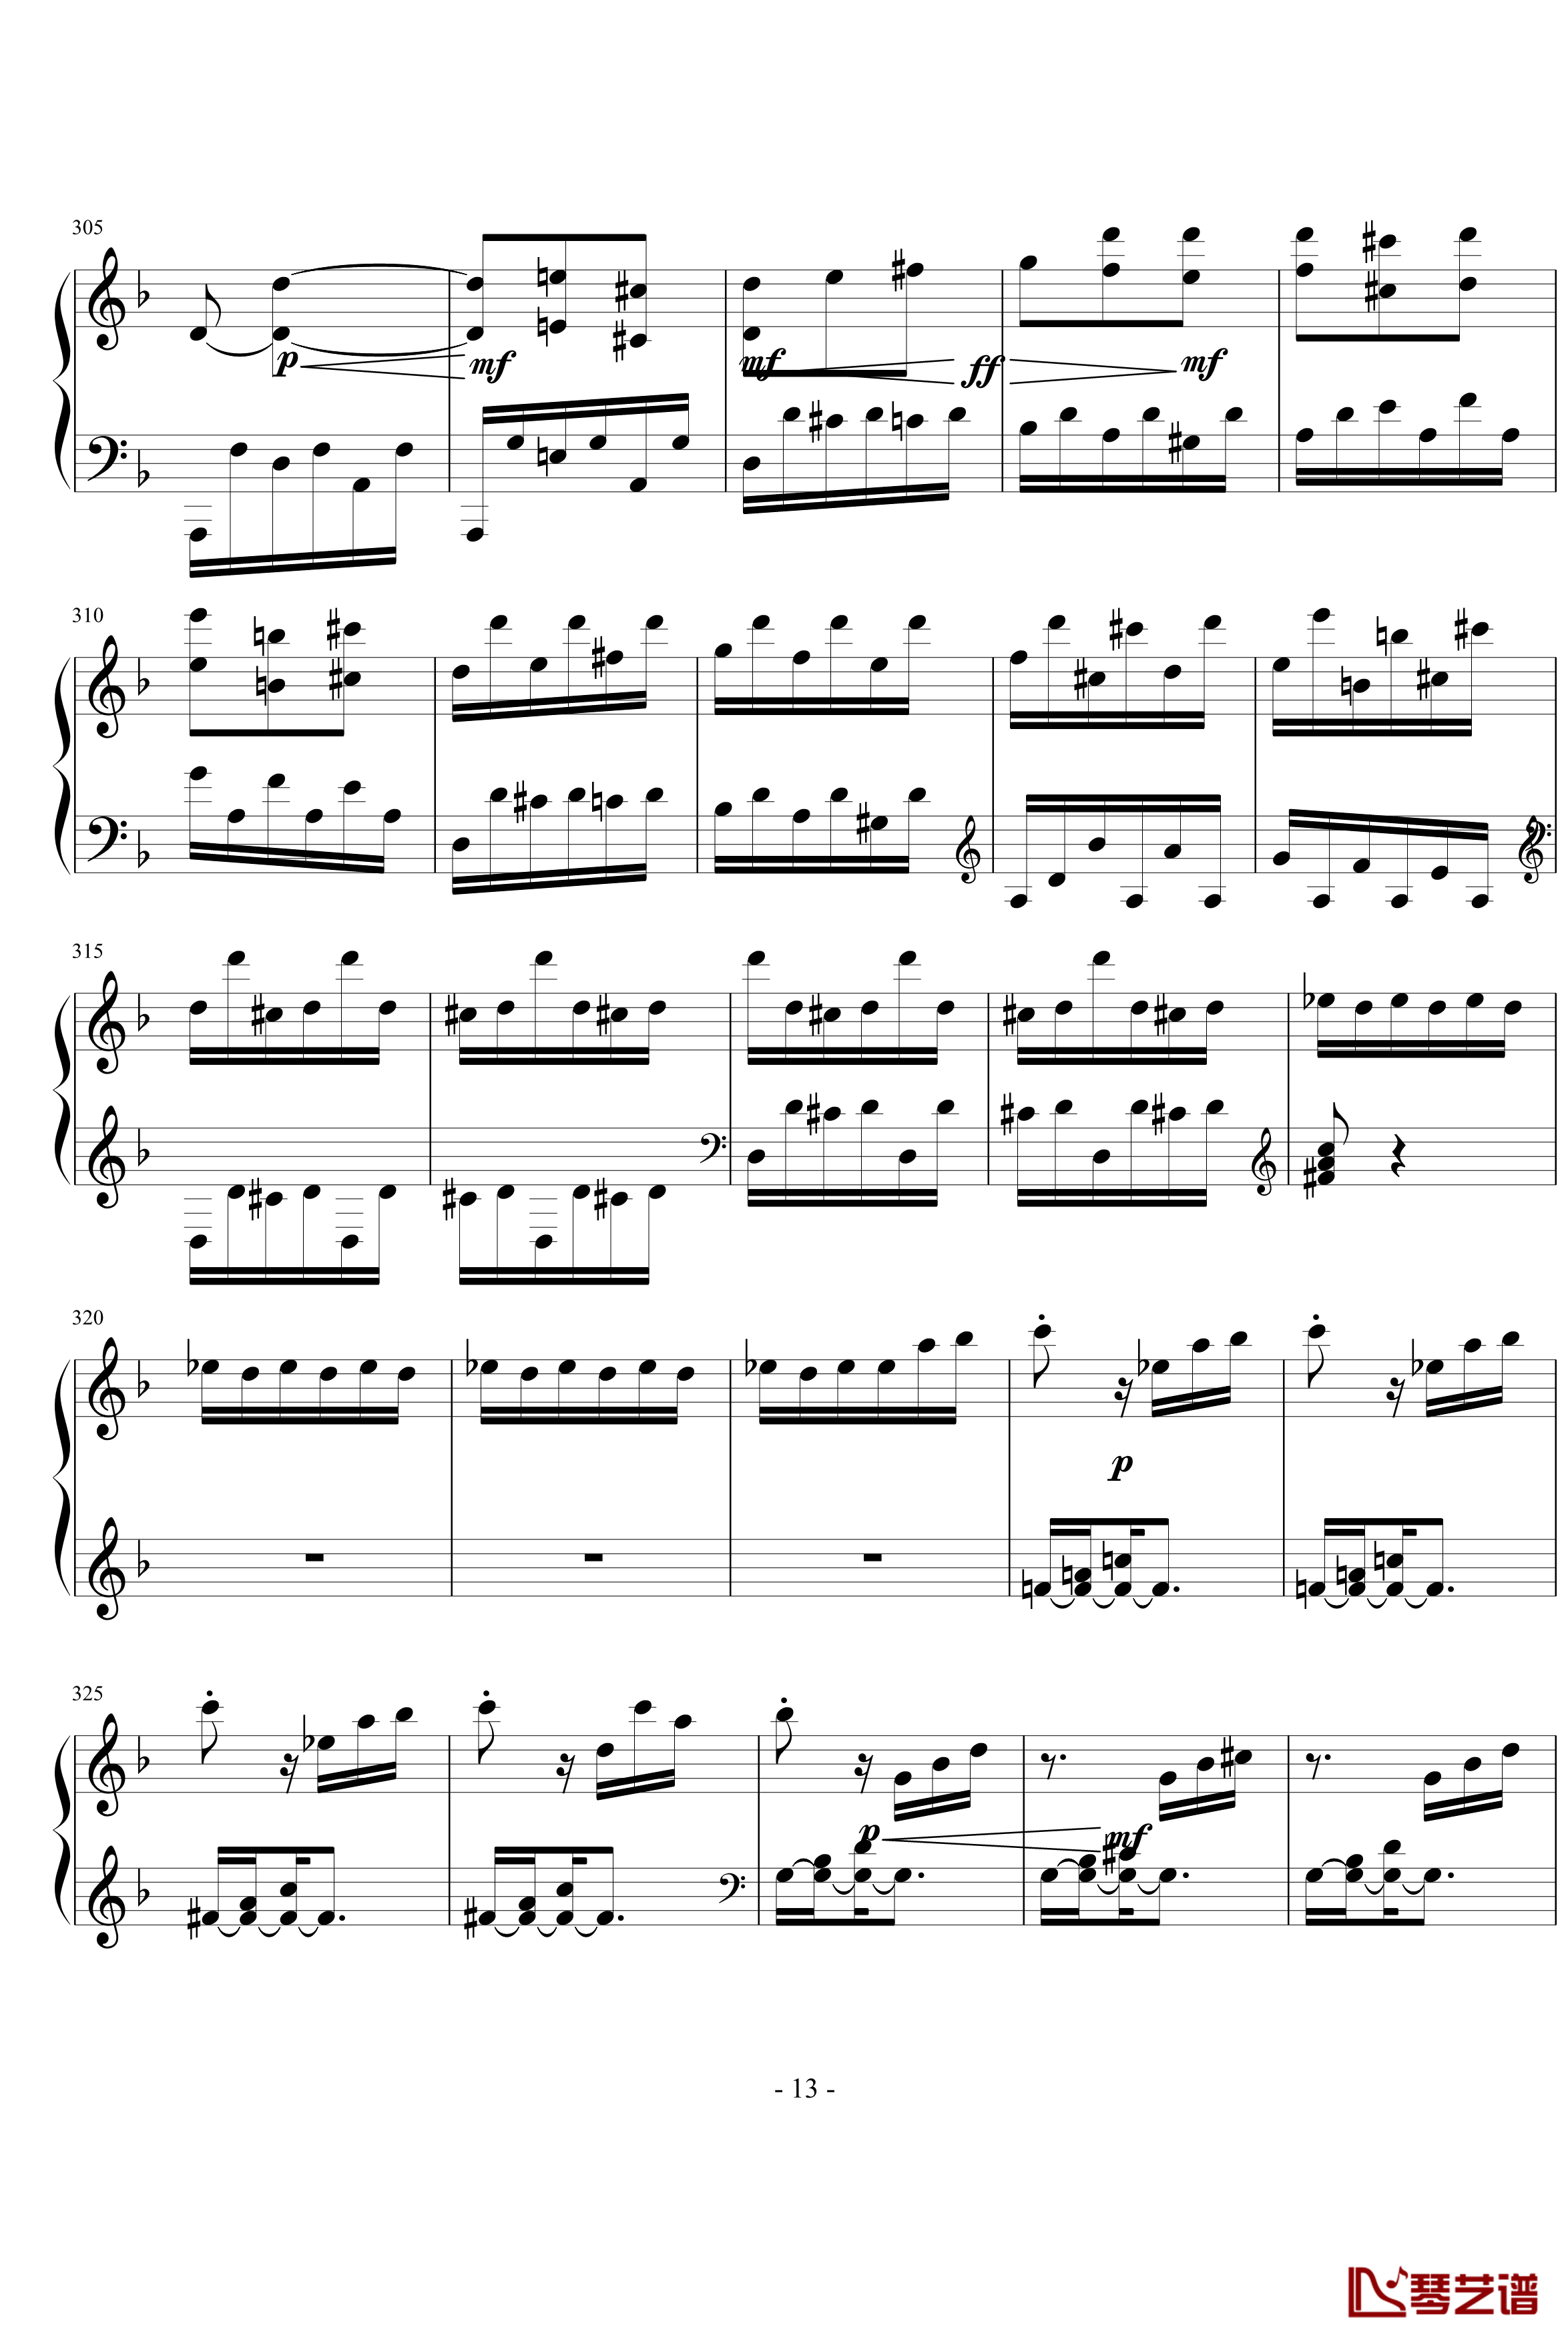 暴风雨第三乐章钢琴谱-贝多芬-beethoven13